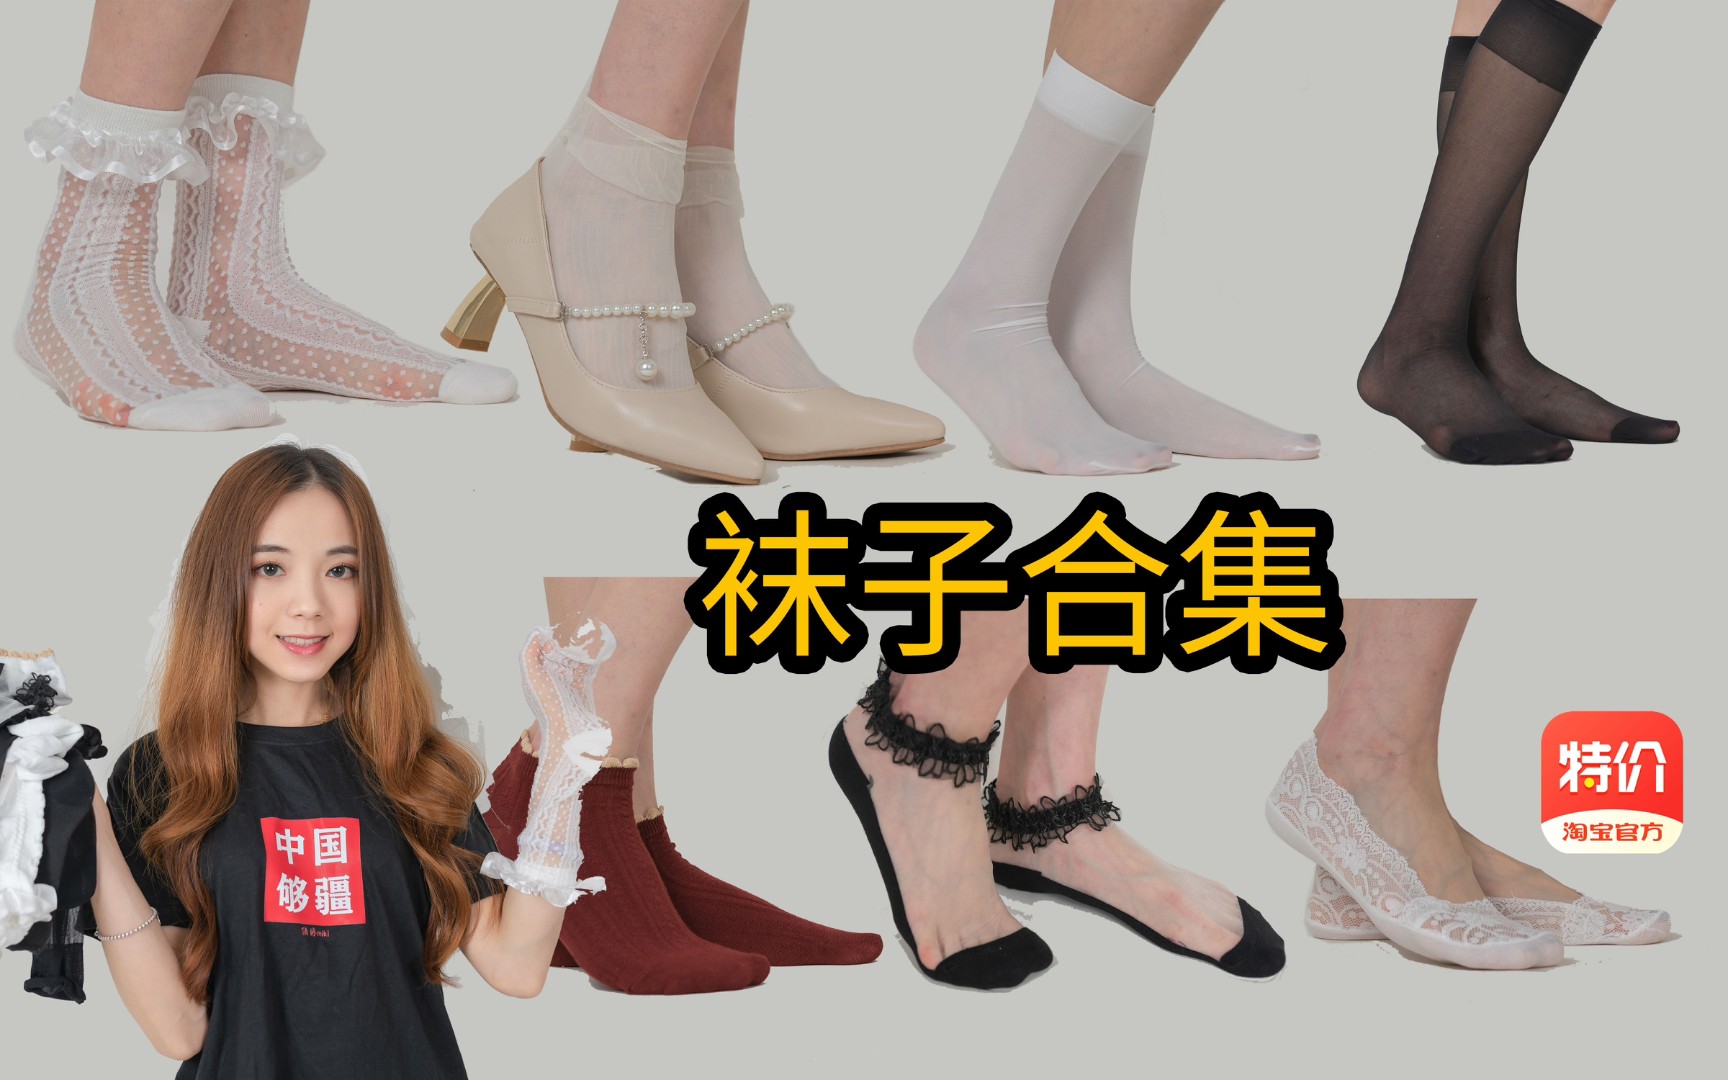 【袜子合集】丝袜 船袜 棉袜 搭配高跟鞋和JK鞋 性感和可爱 哪个你更爱？